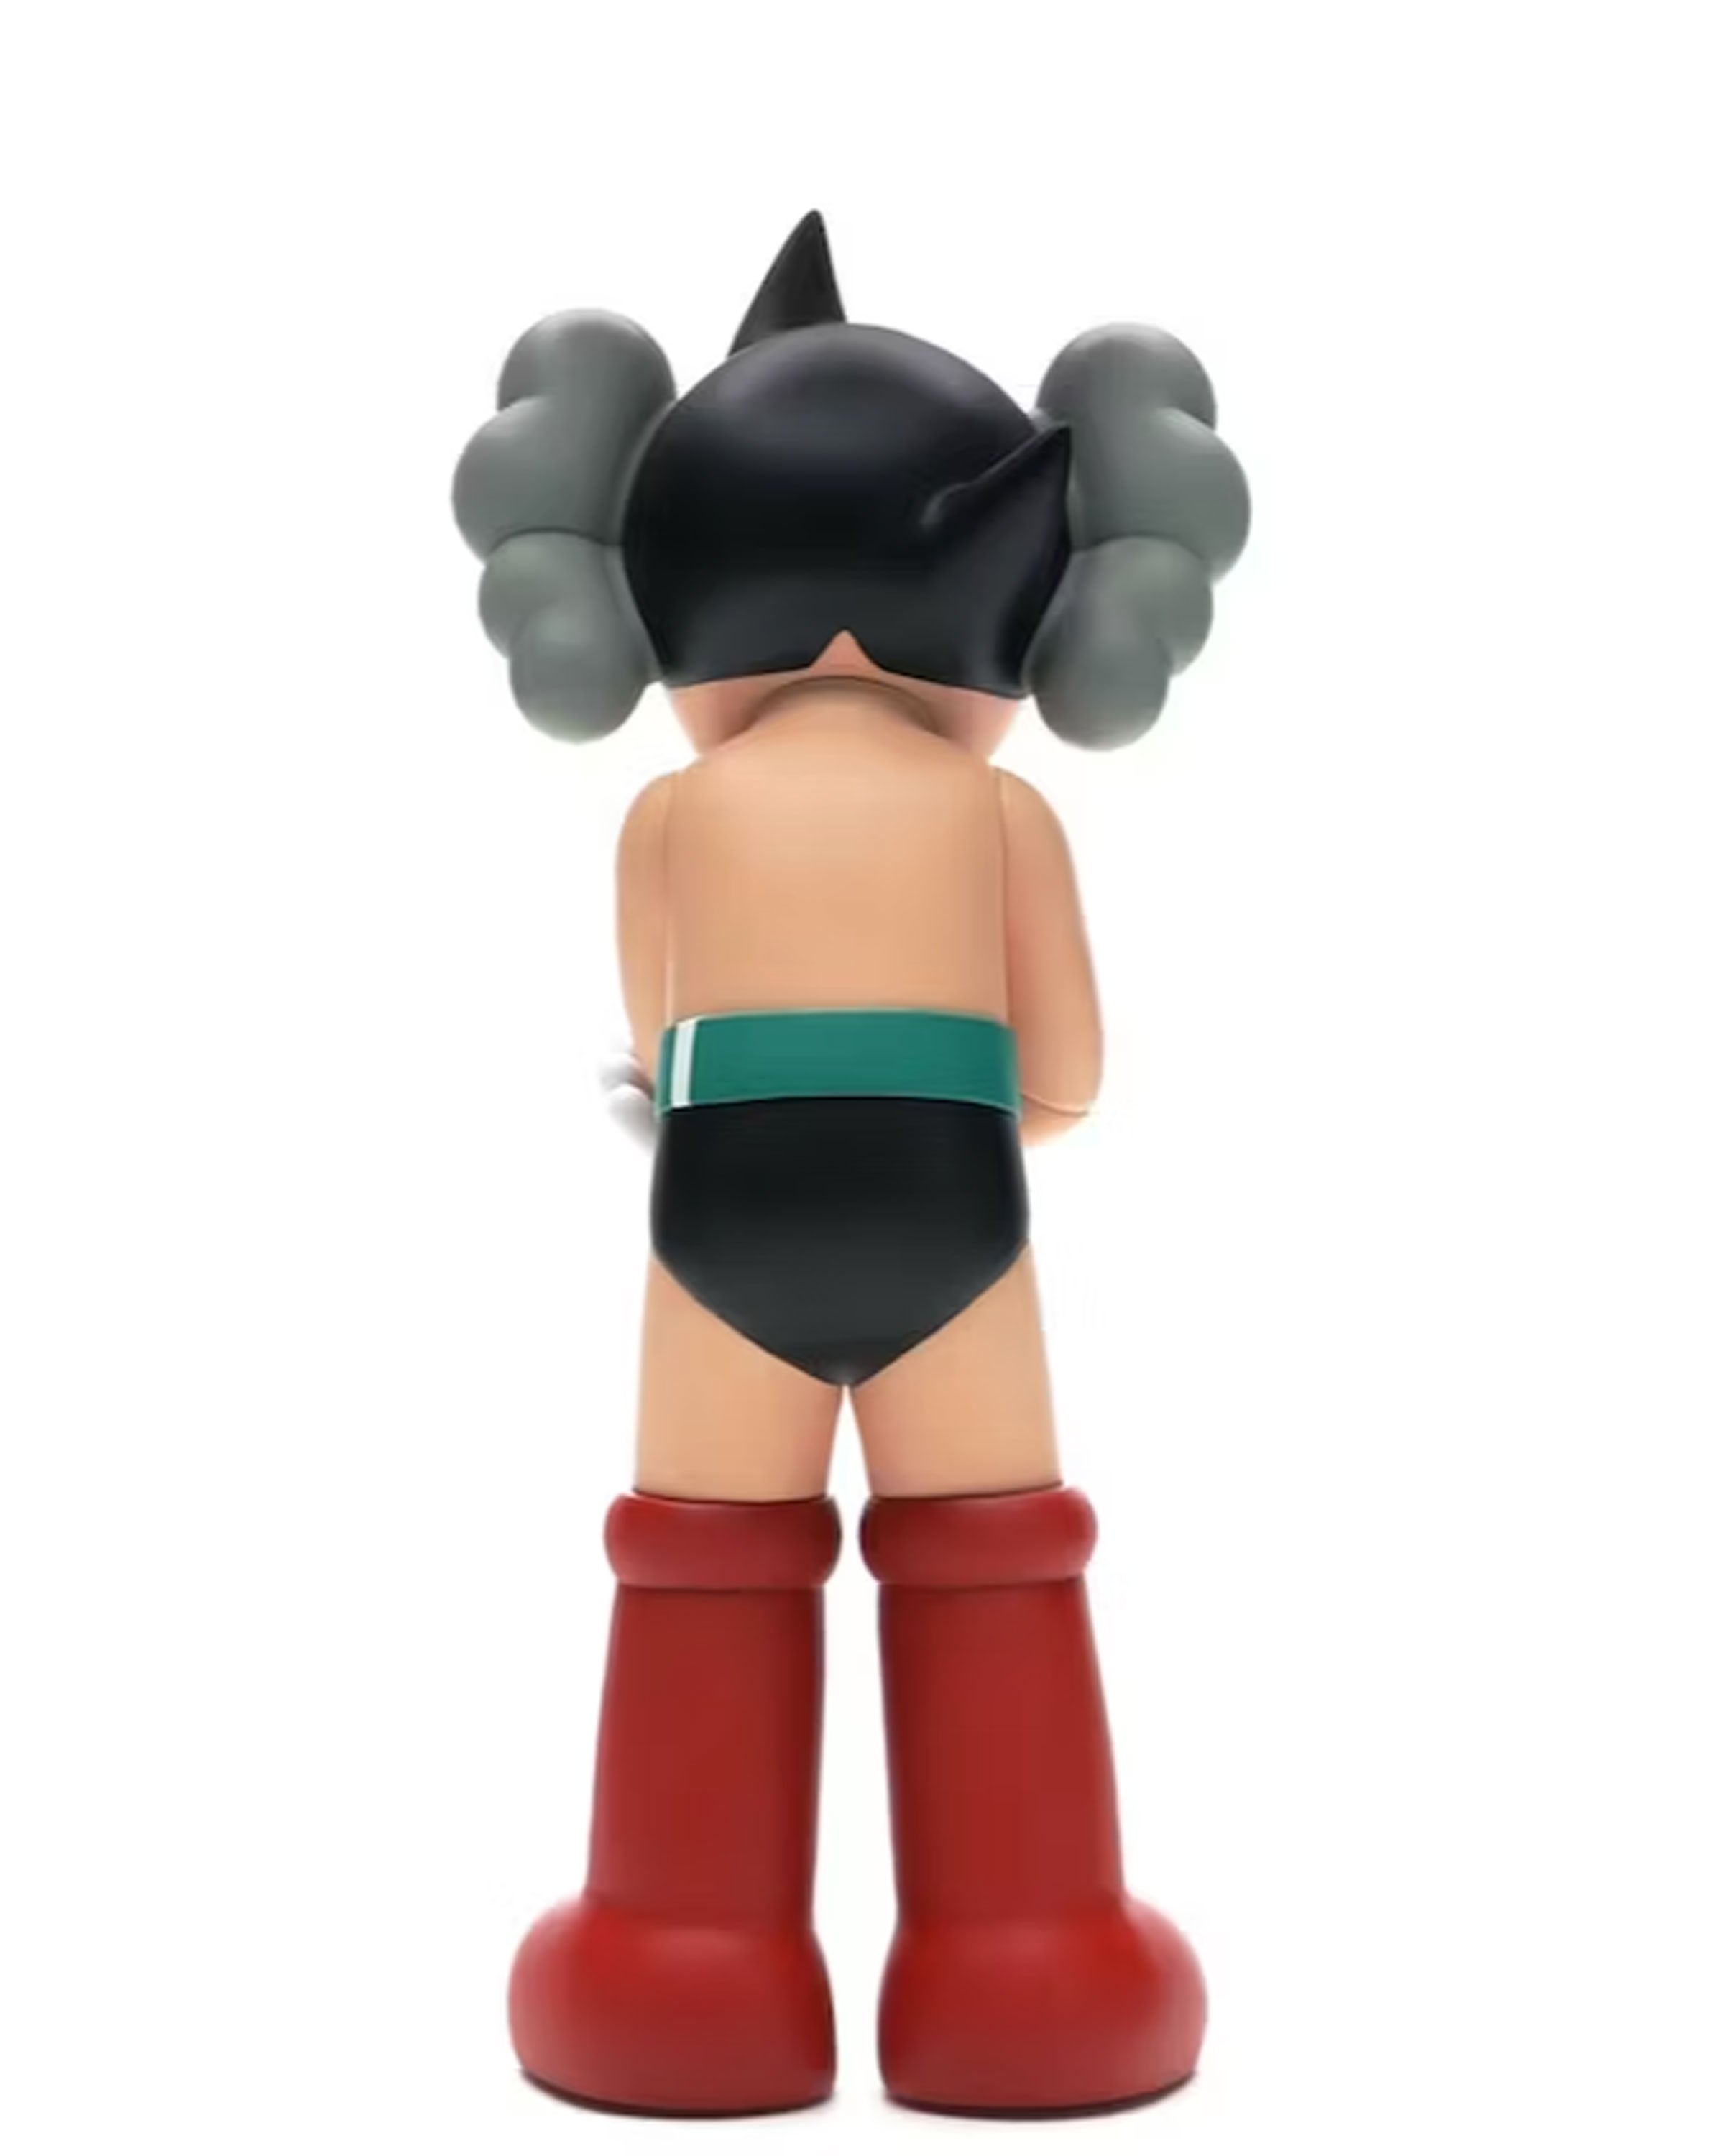 Astro Boy Vinyl Figure (2012)